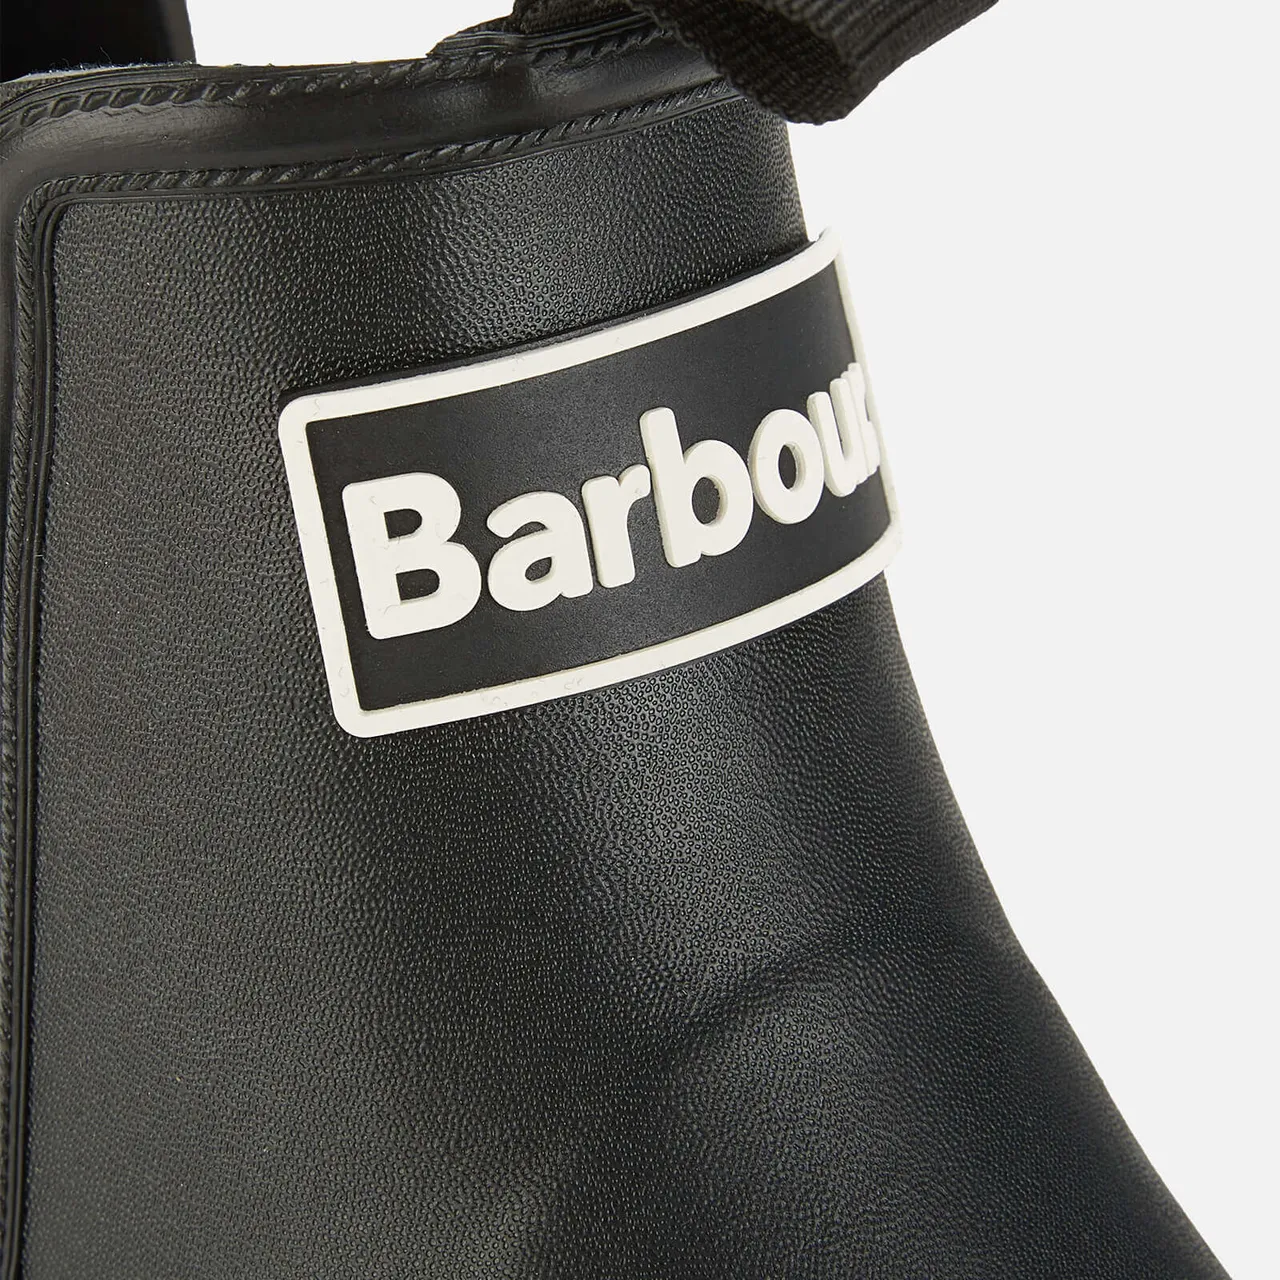 Barbour Men's Nimbus Rubber Chelsea Boots - Black